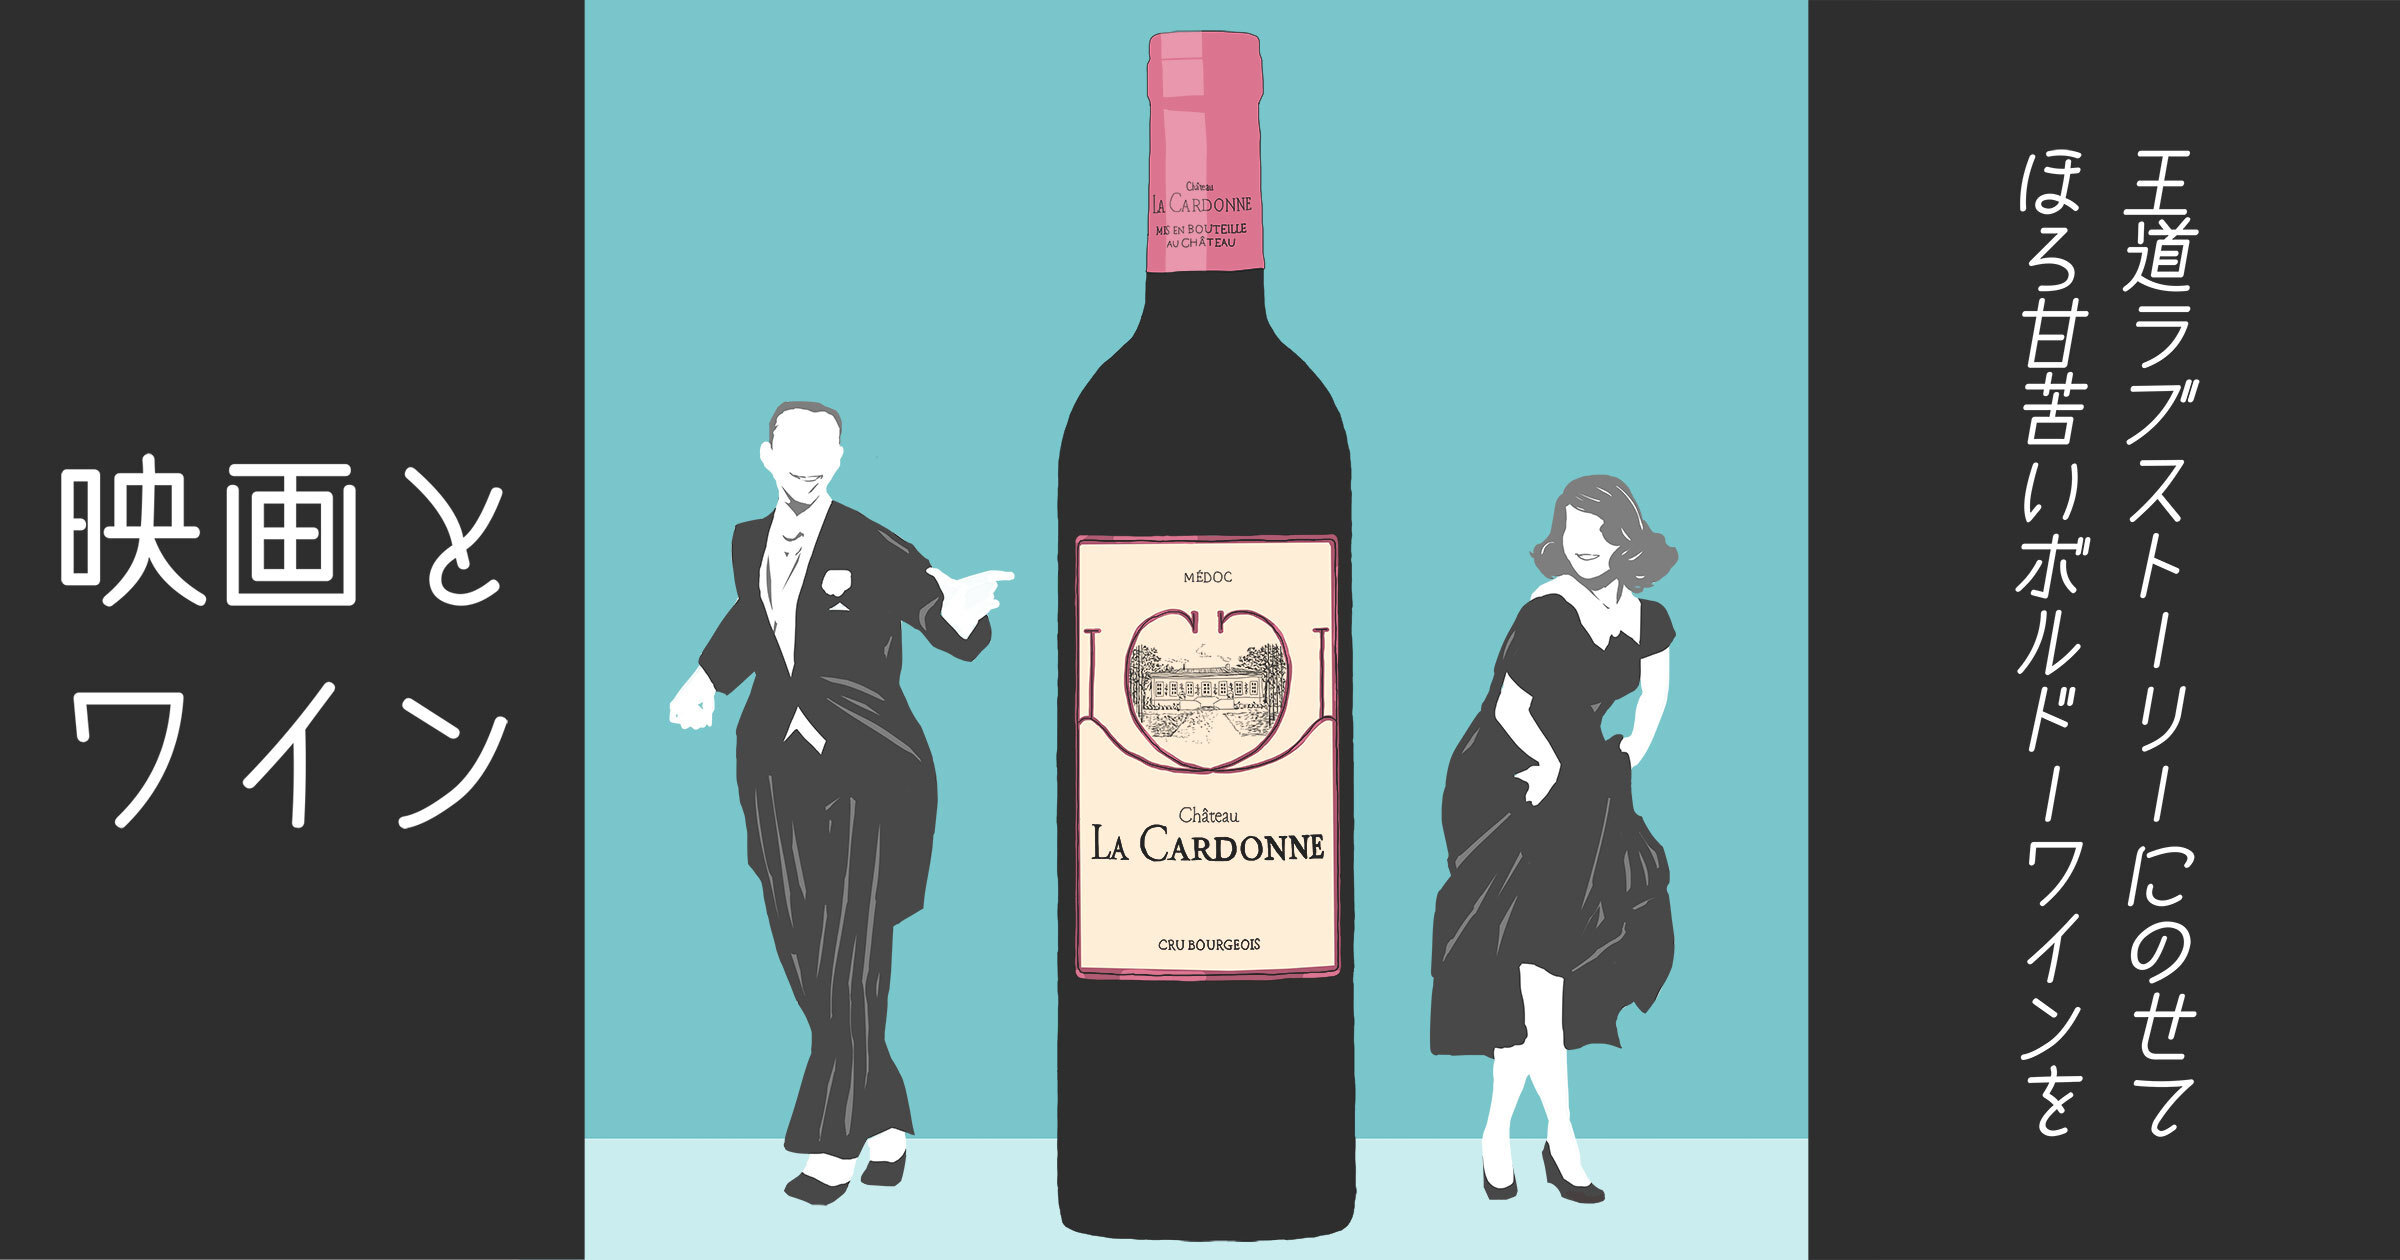 【シネマ×ワイン】クラシックなミュージカル映画『トップ・ハット』と、エレガントなボルドー・ワイン、シャトー・ラ・カルドンヌ